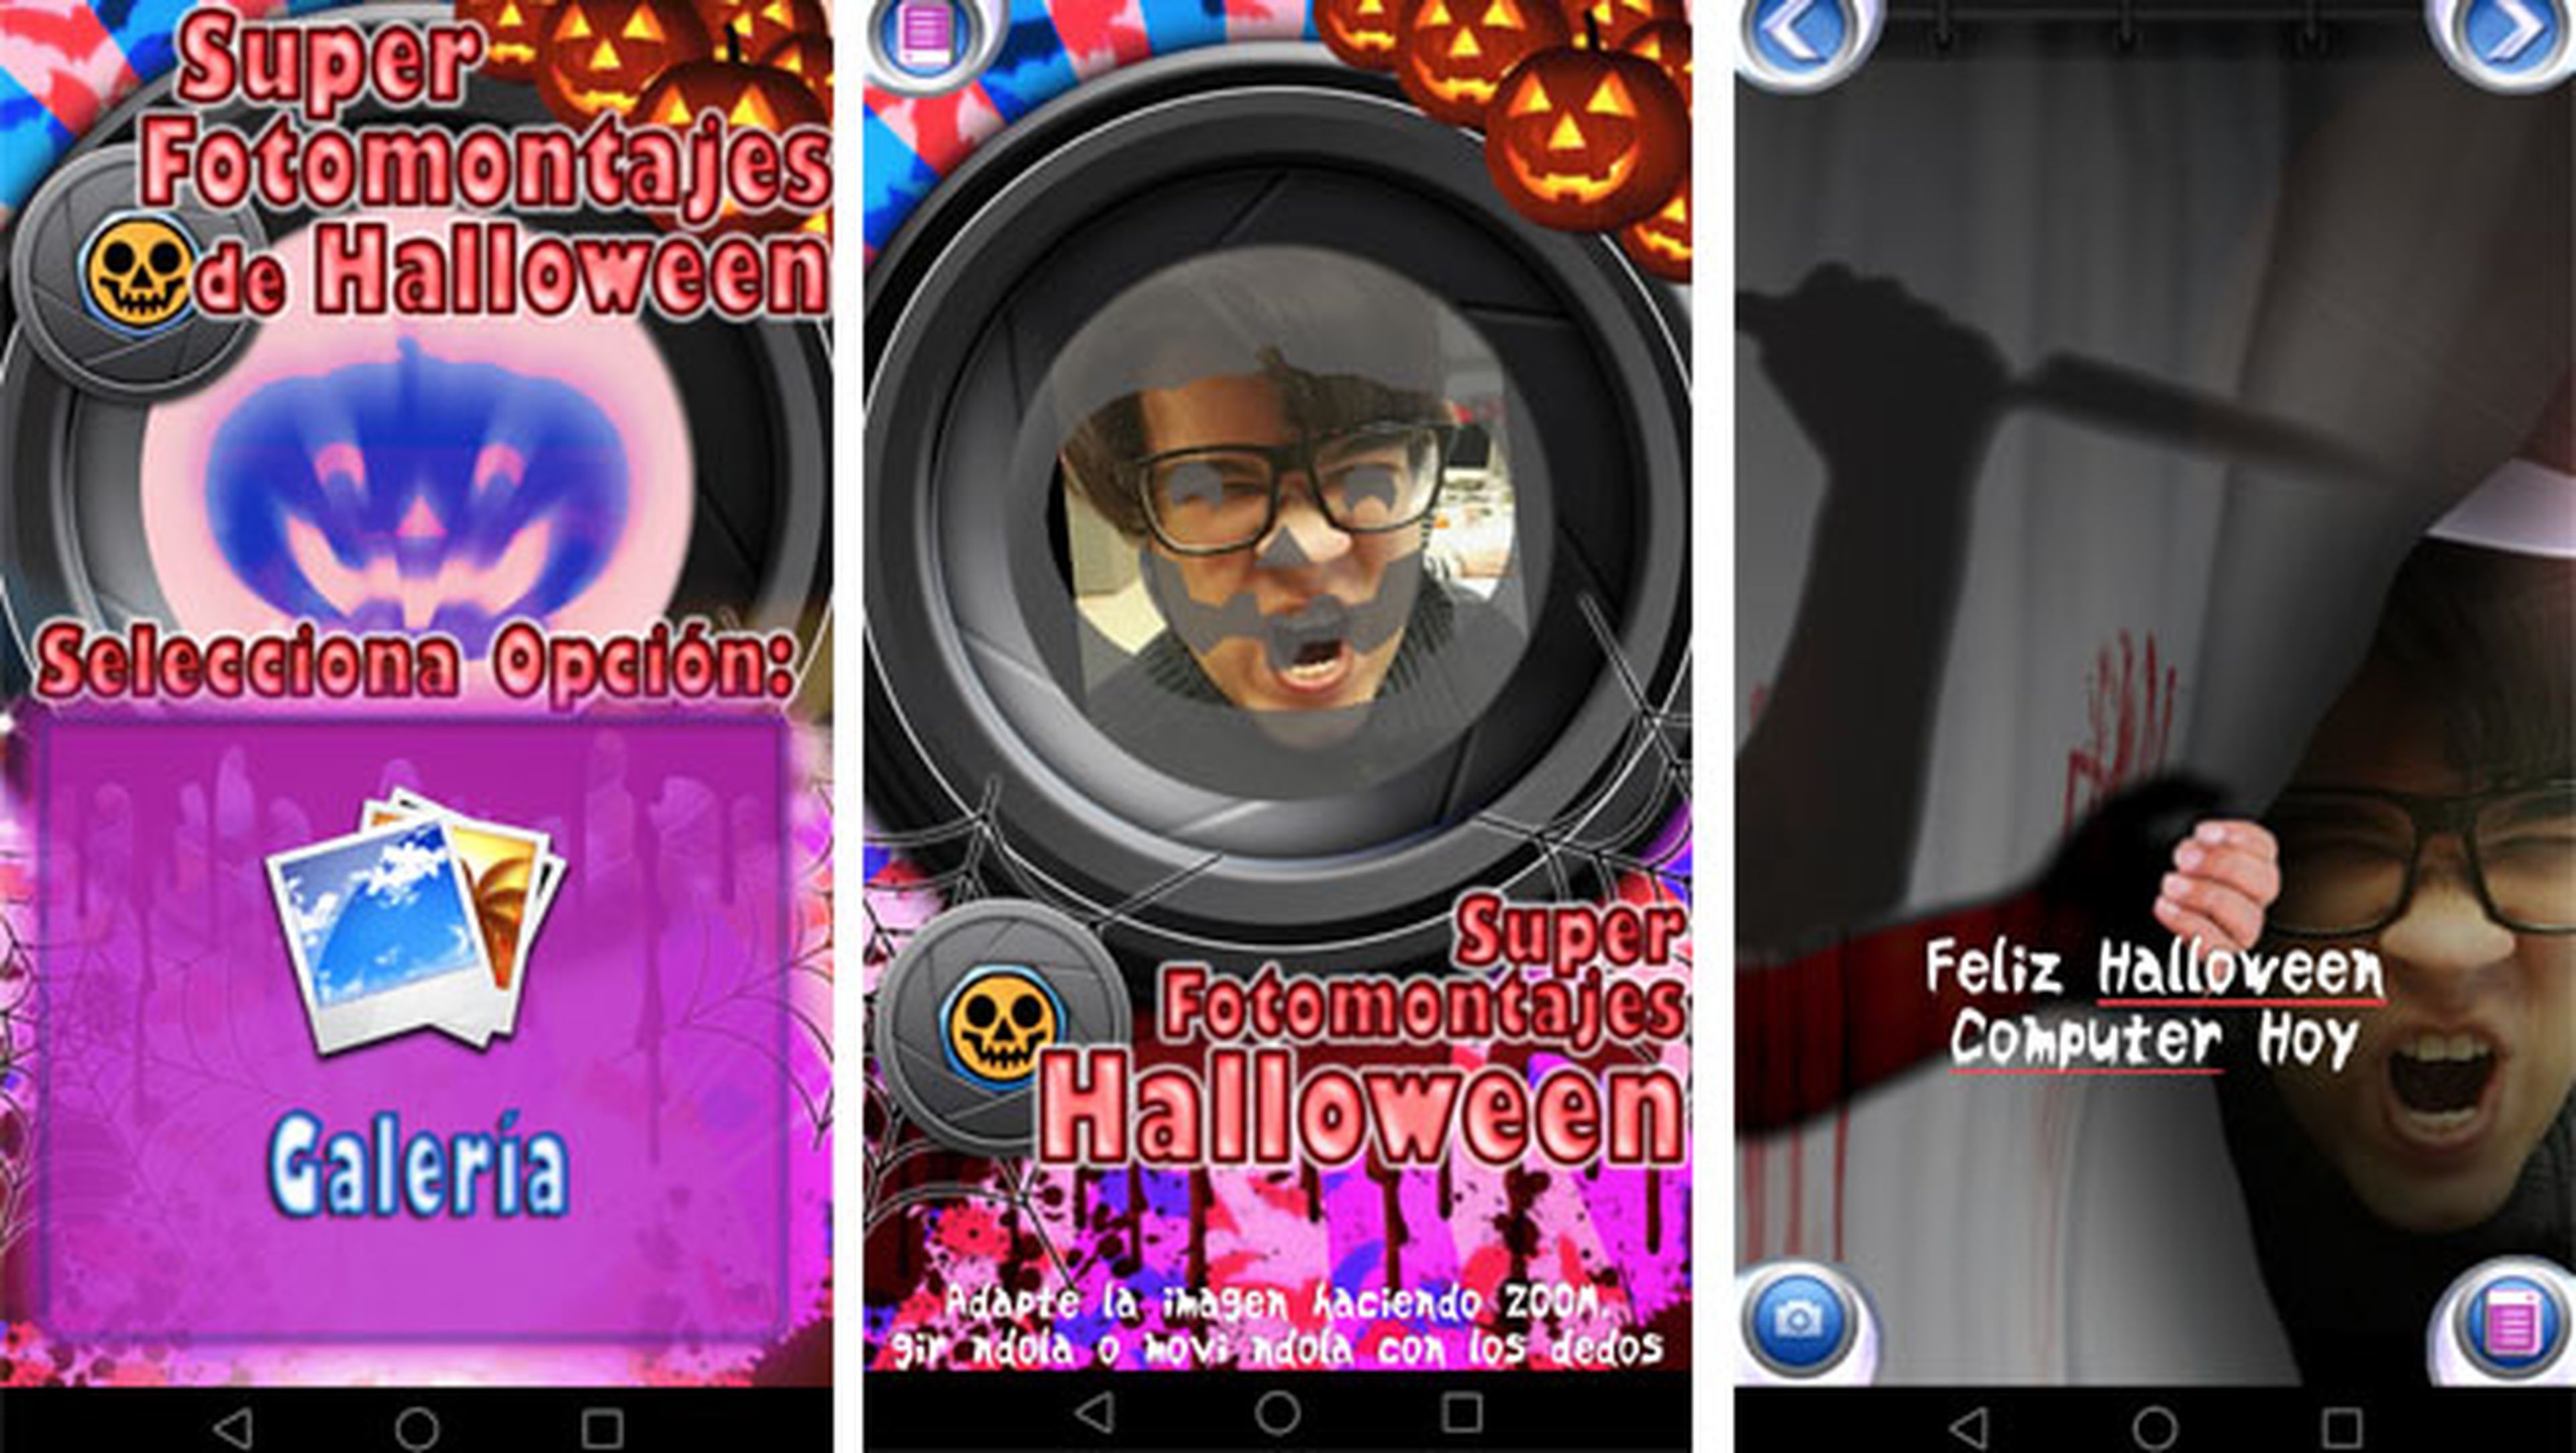 Súper Fotomontajes Halloween mejores apps felicitar Halloween